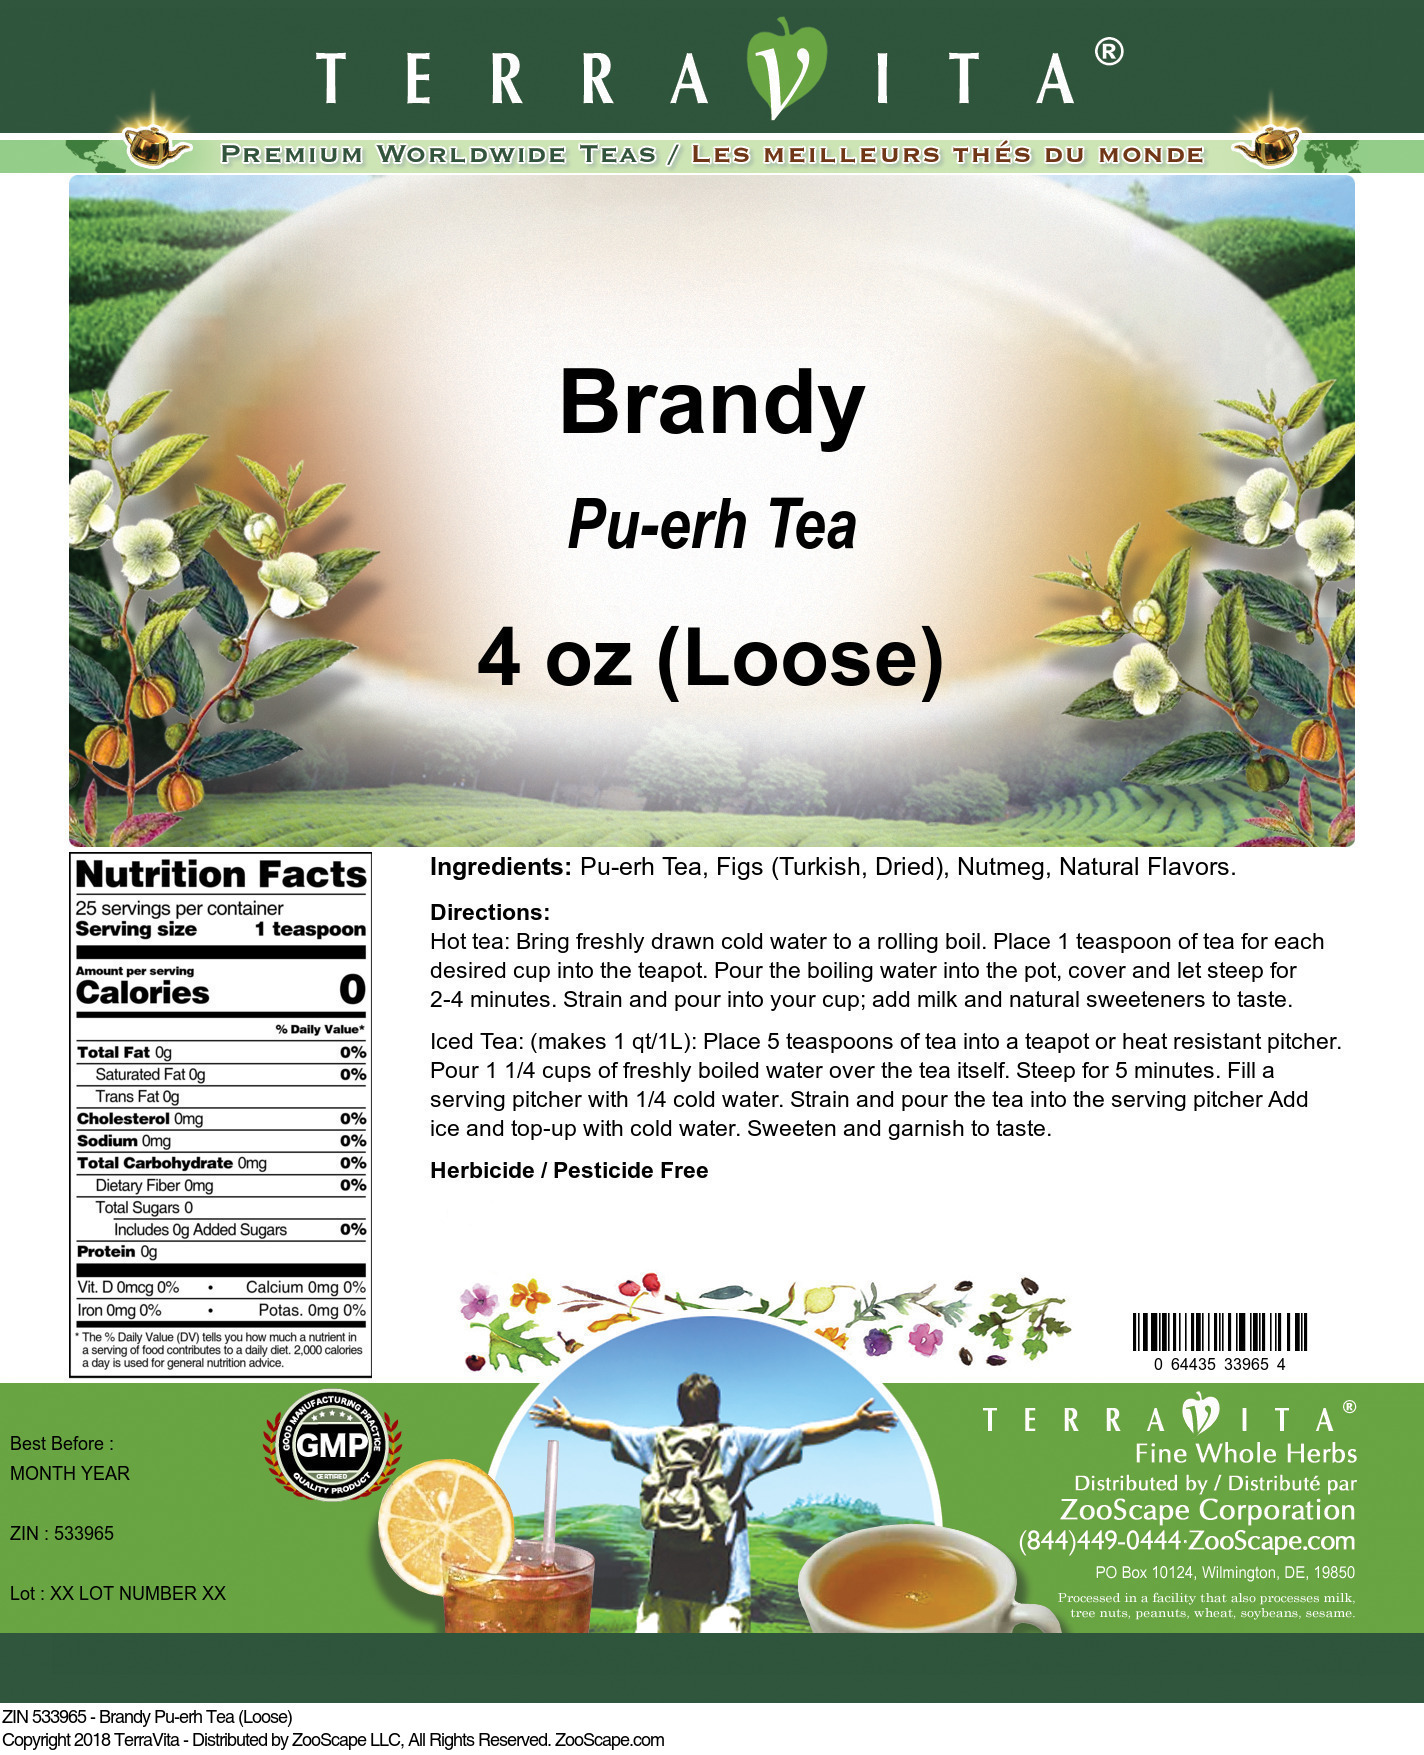 Brandy Pu-erh Tea (Loose) - Label